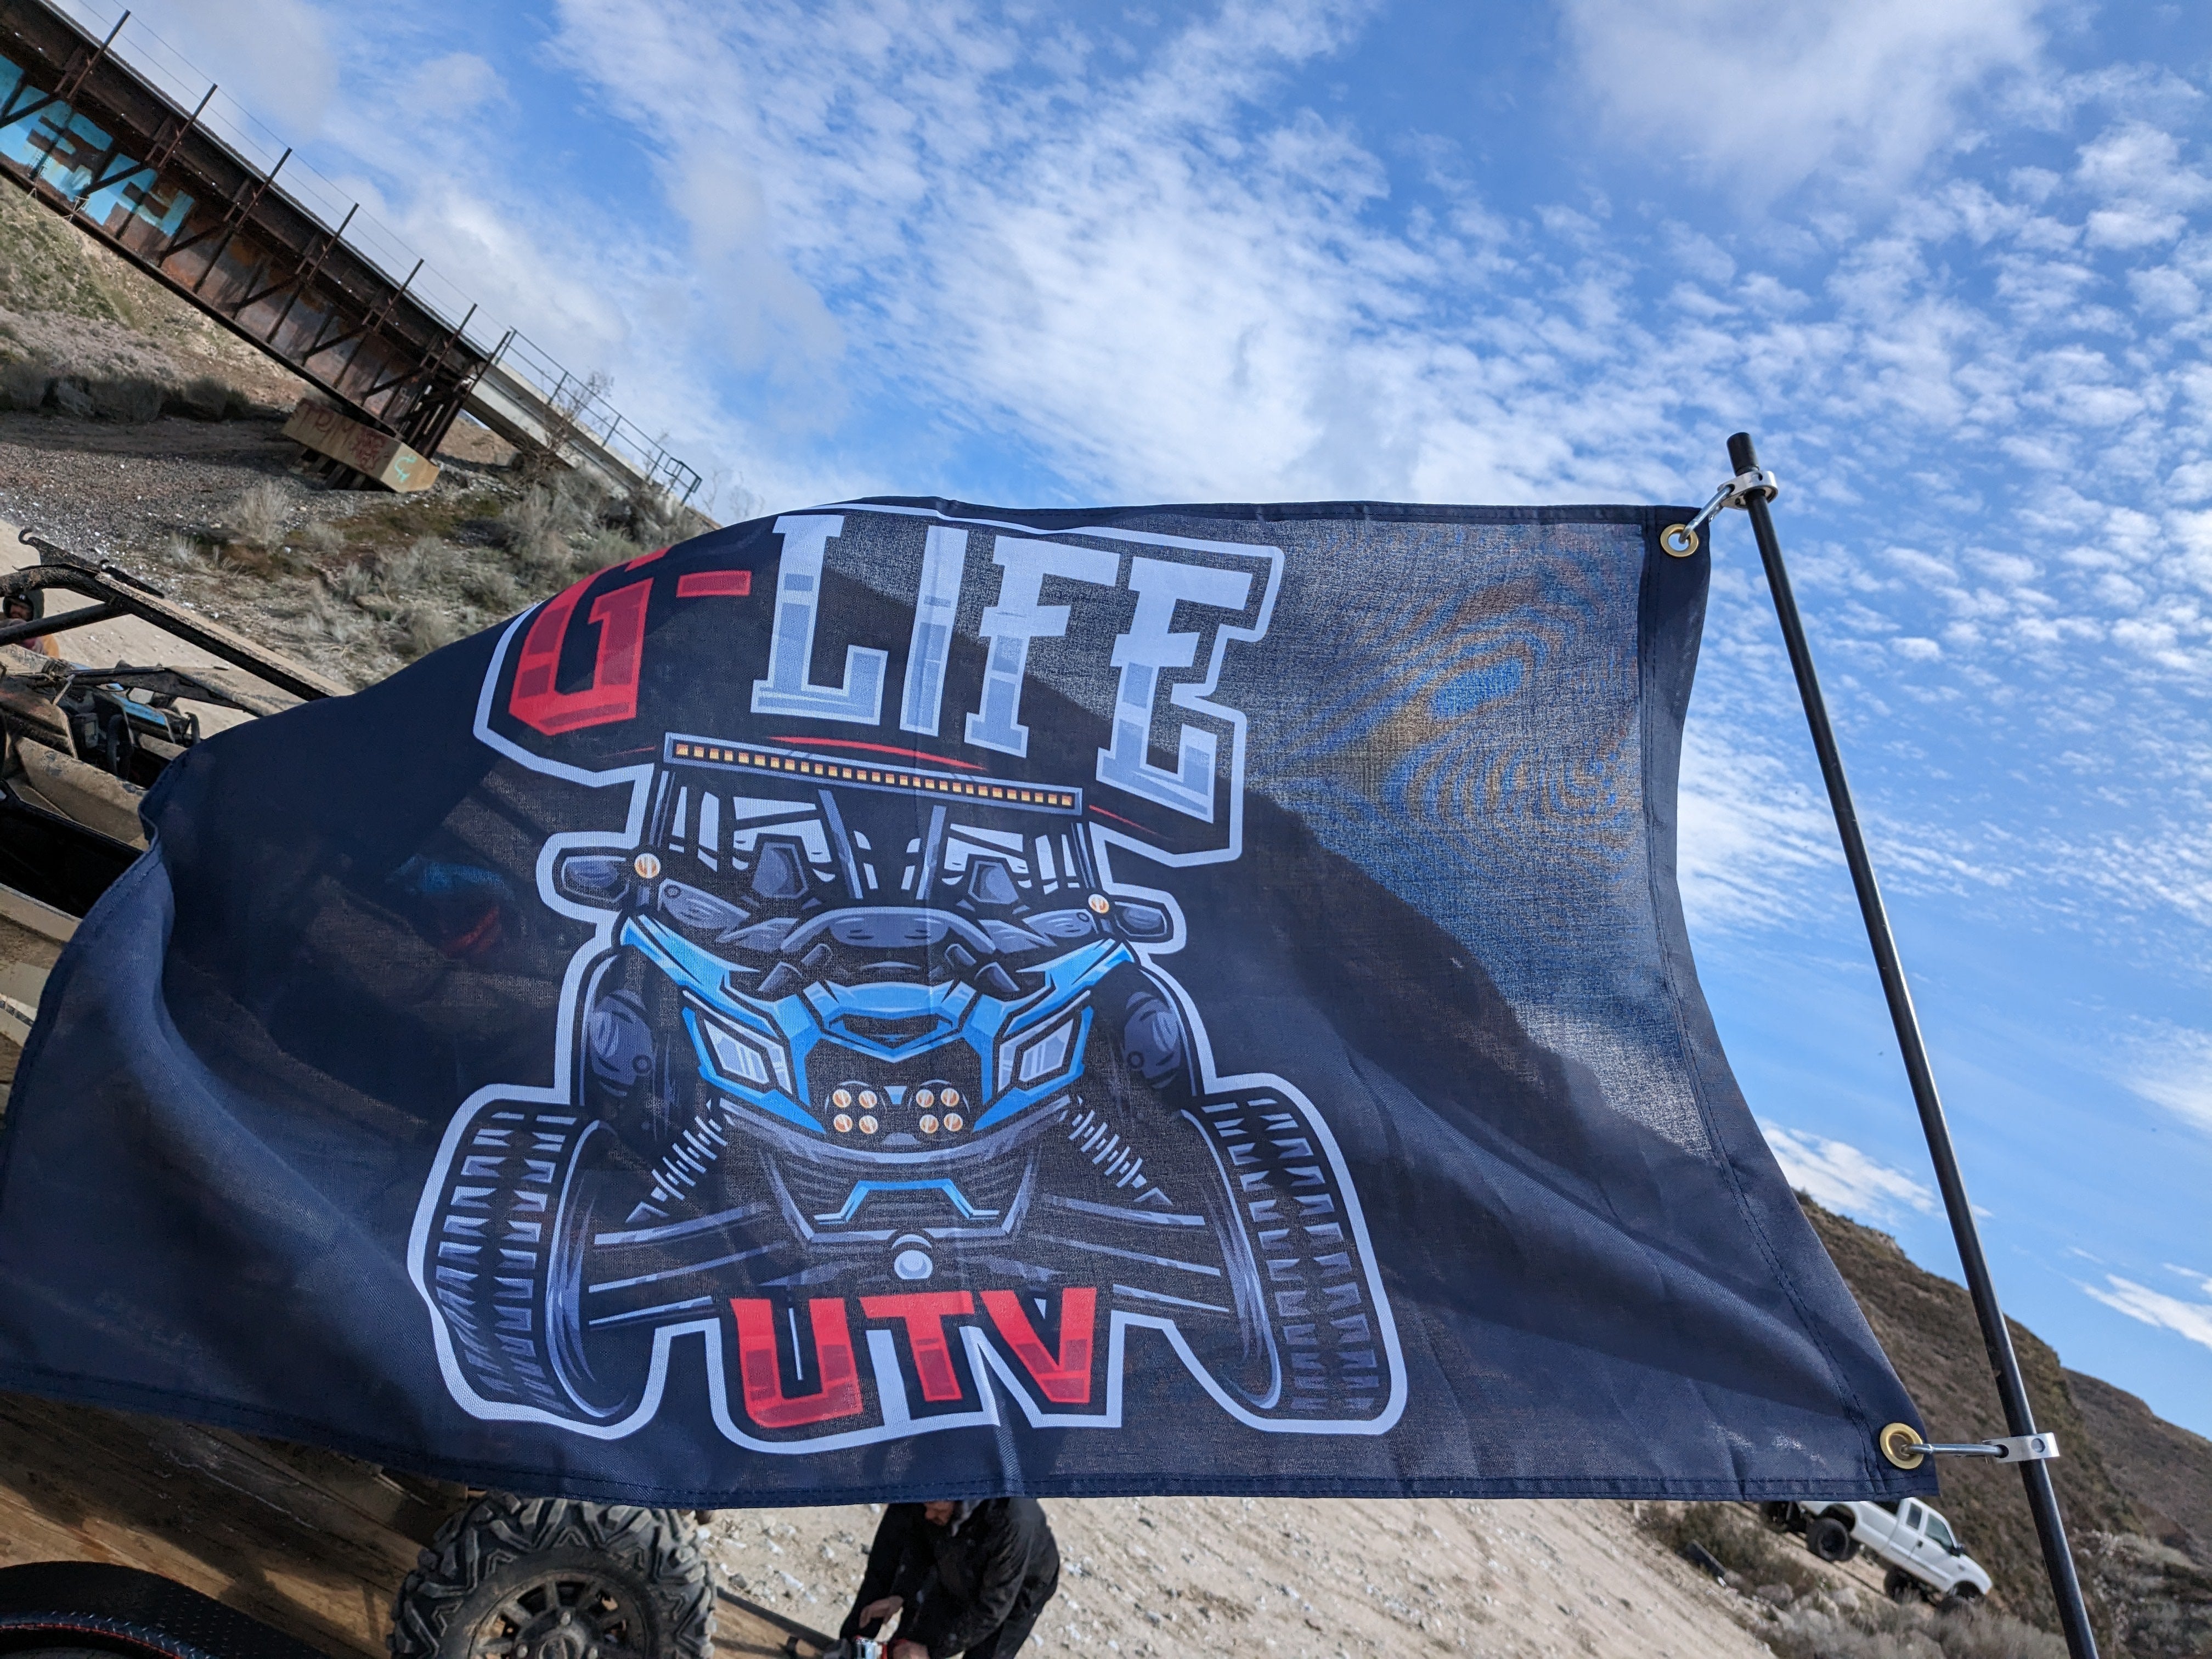 G Life UTV X3 Whip Flag 2'x3'